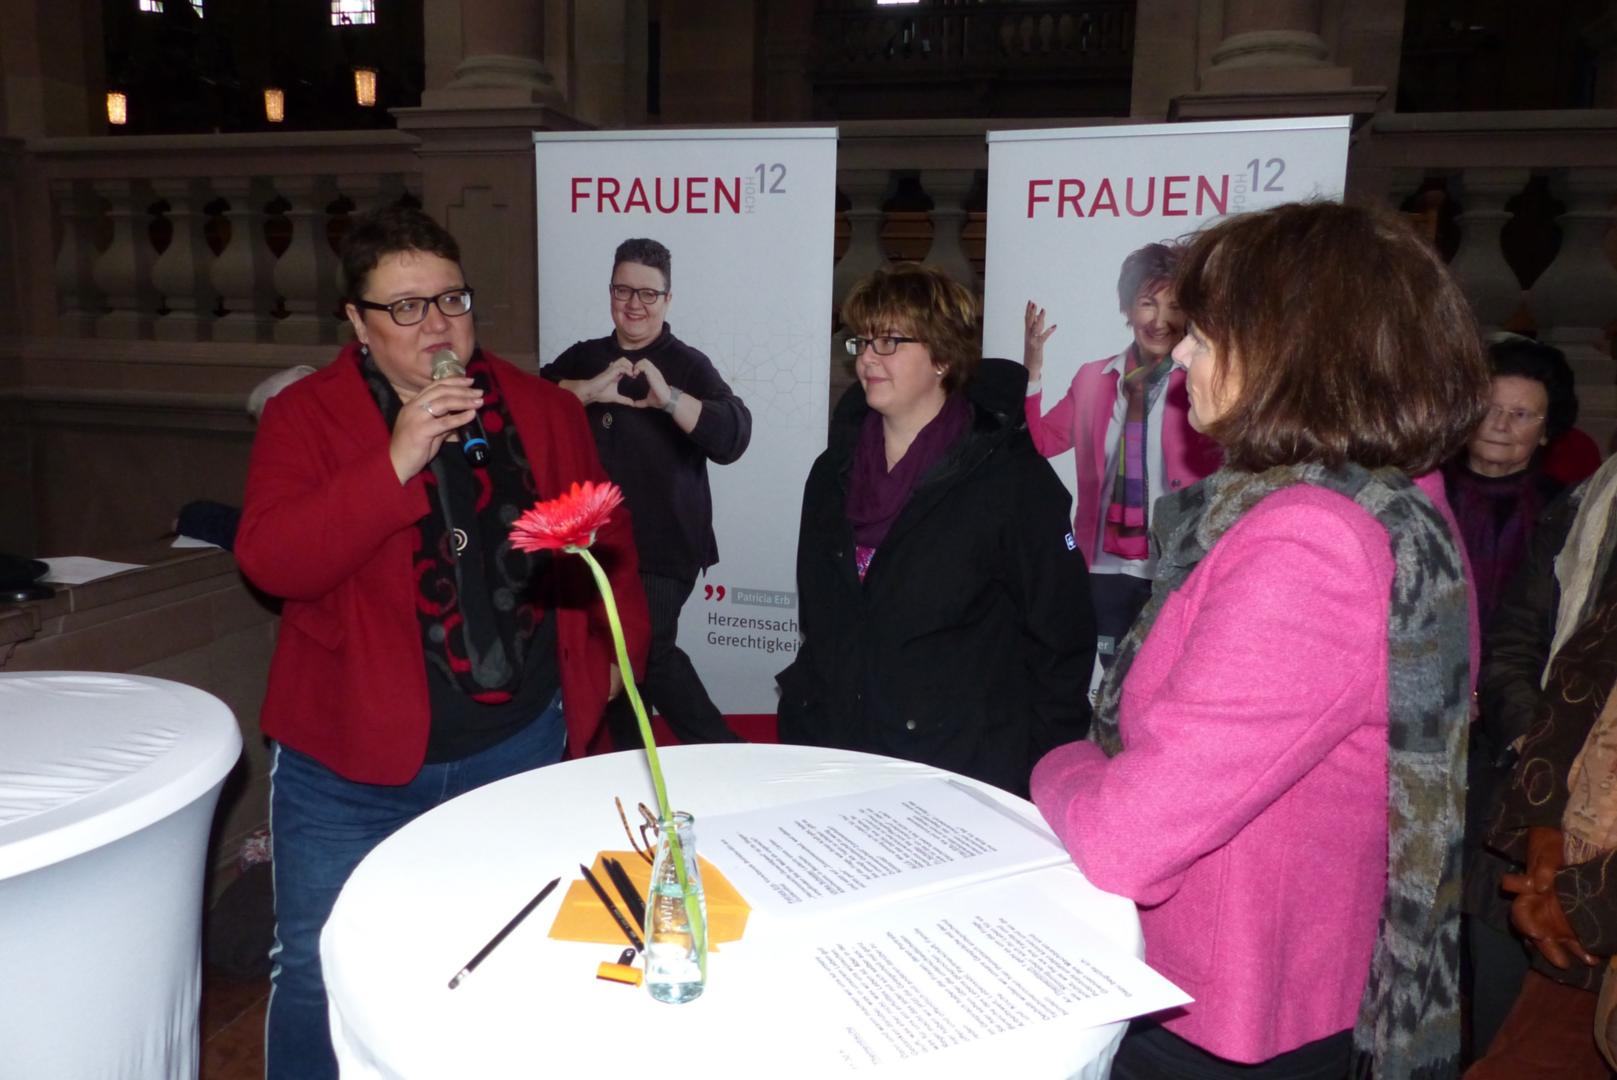 Frauen hoch 12 - Die Veranstalterinnen, Moderatorin, Musikerin (c) kfd Mainz